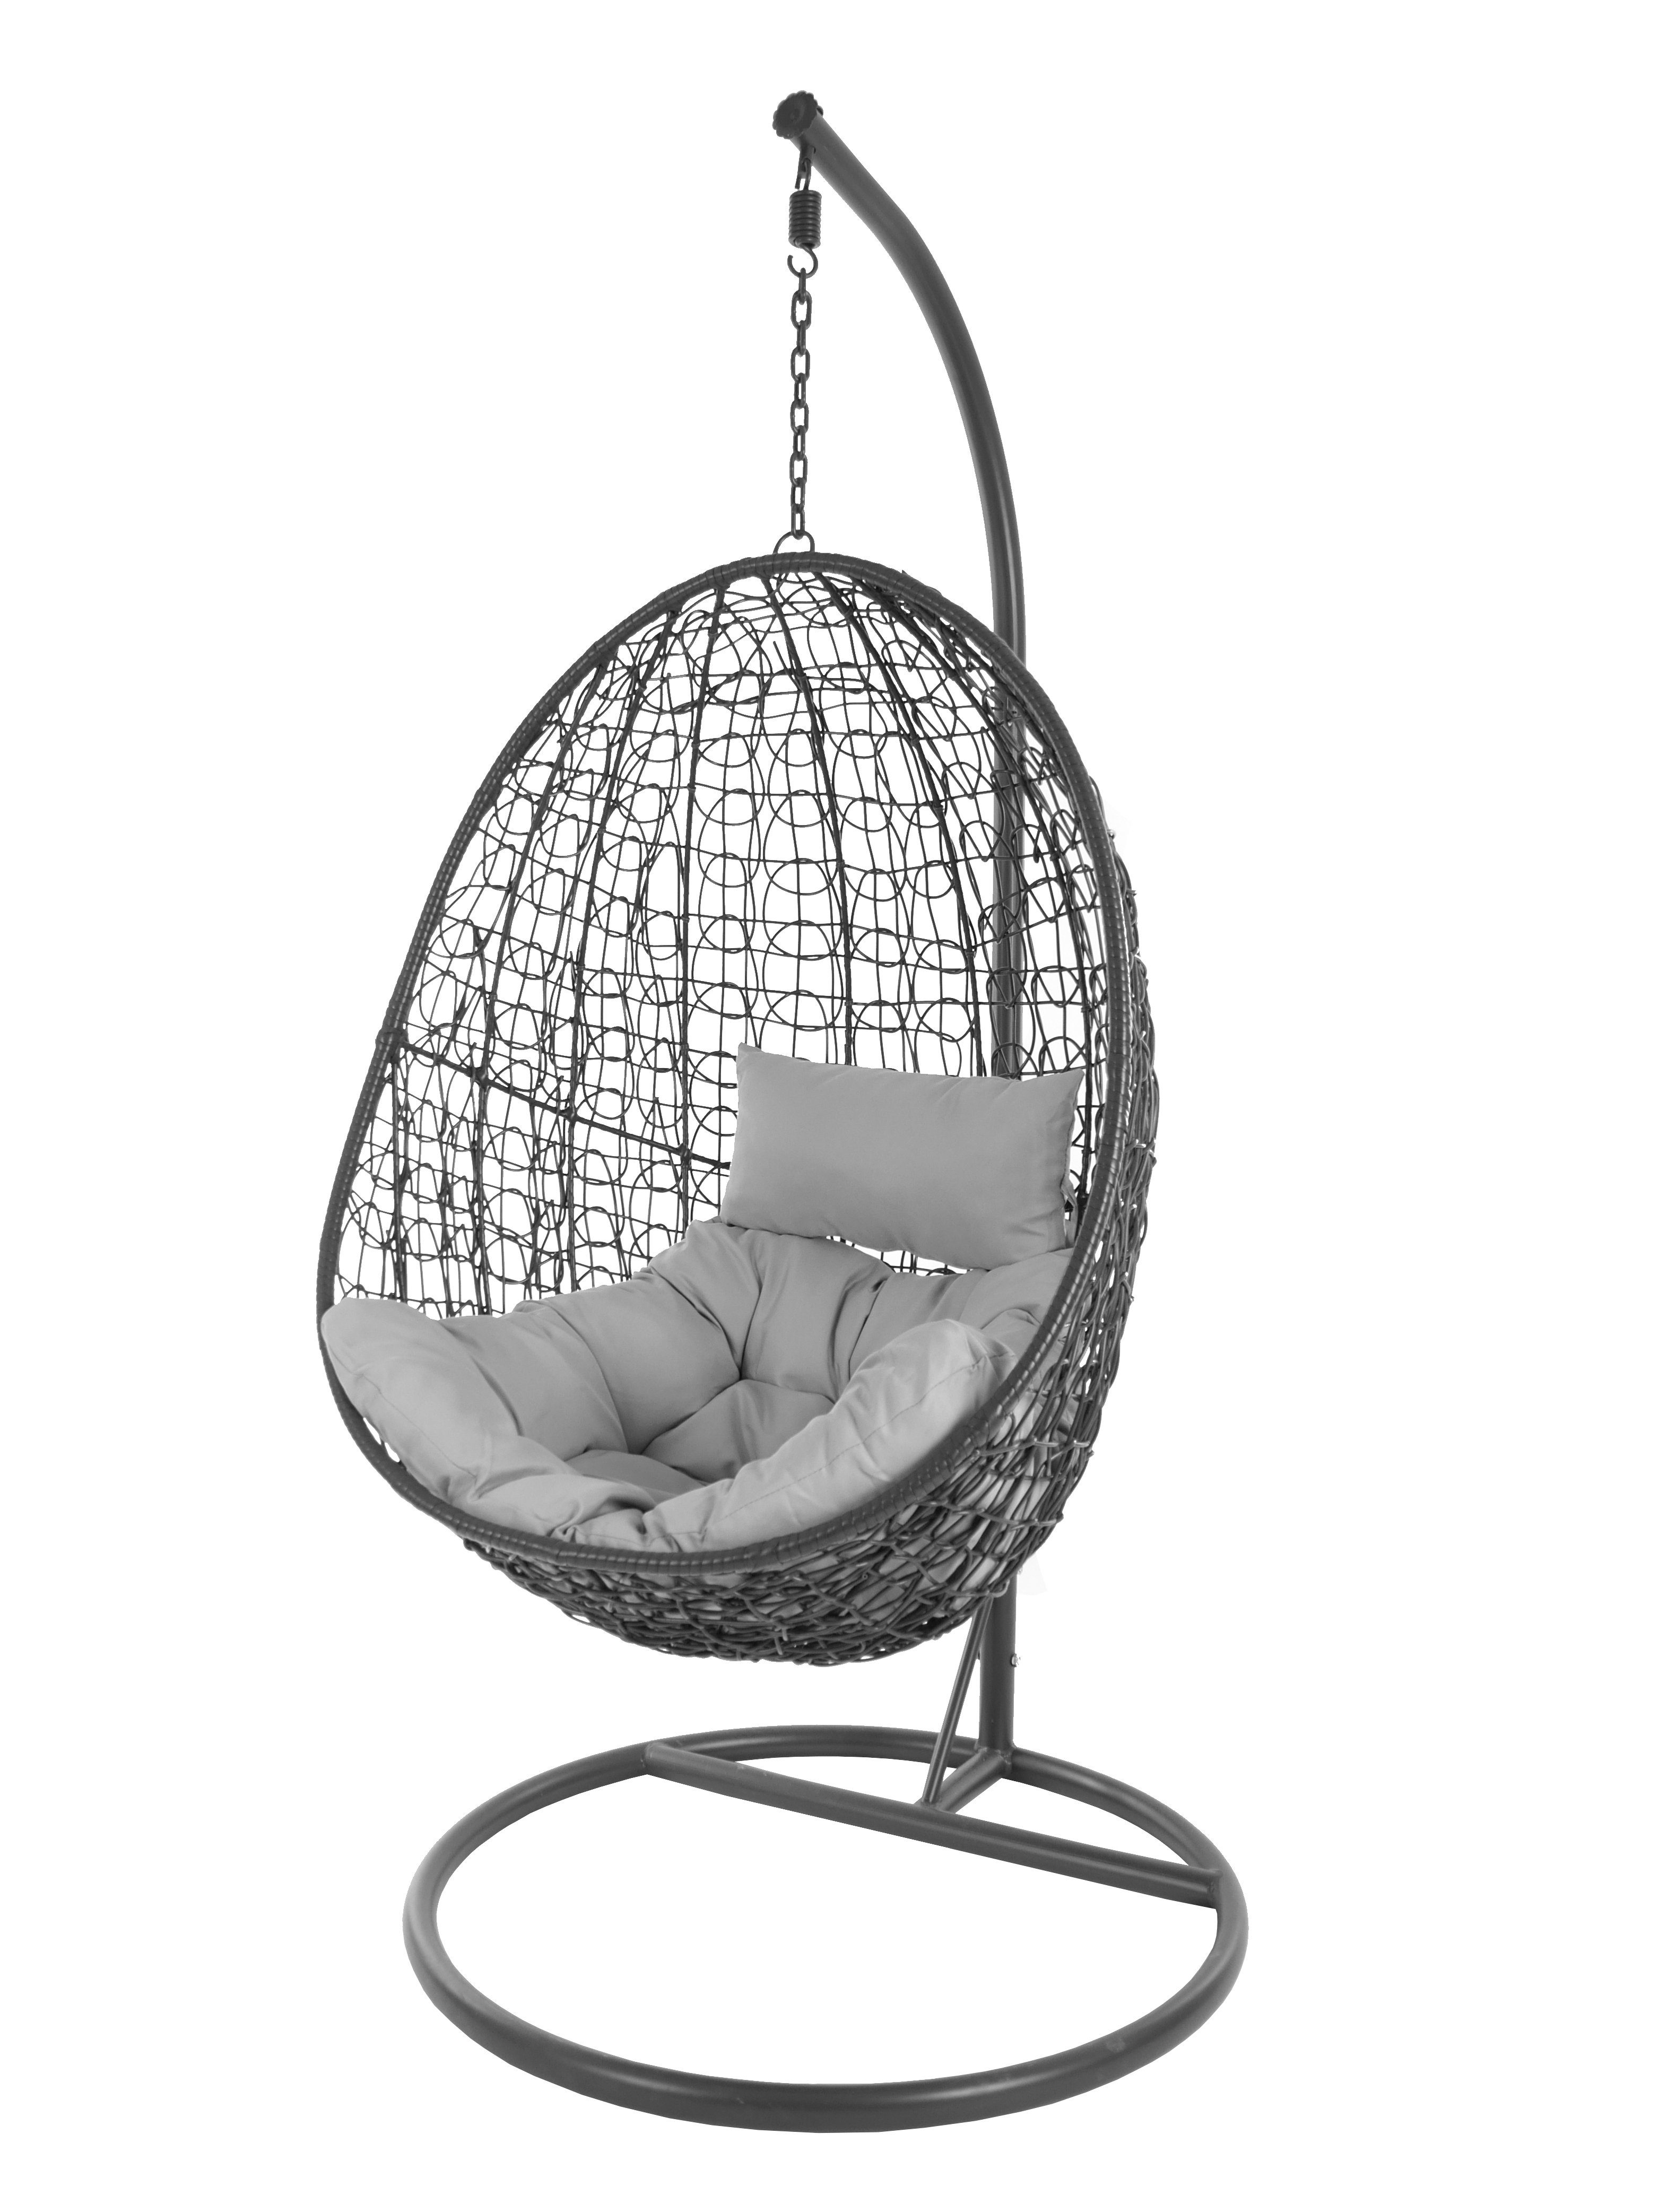 KIDEO Hängesessel Hängesessel Capdepera Swing Schwebesessel grau (8008 mit cloud) und Chair, anthrazit, moderner Kissen, Loungemöbel Gestell